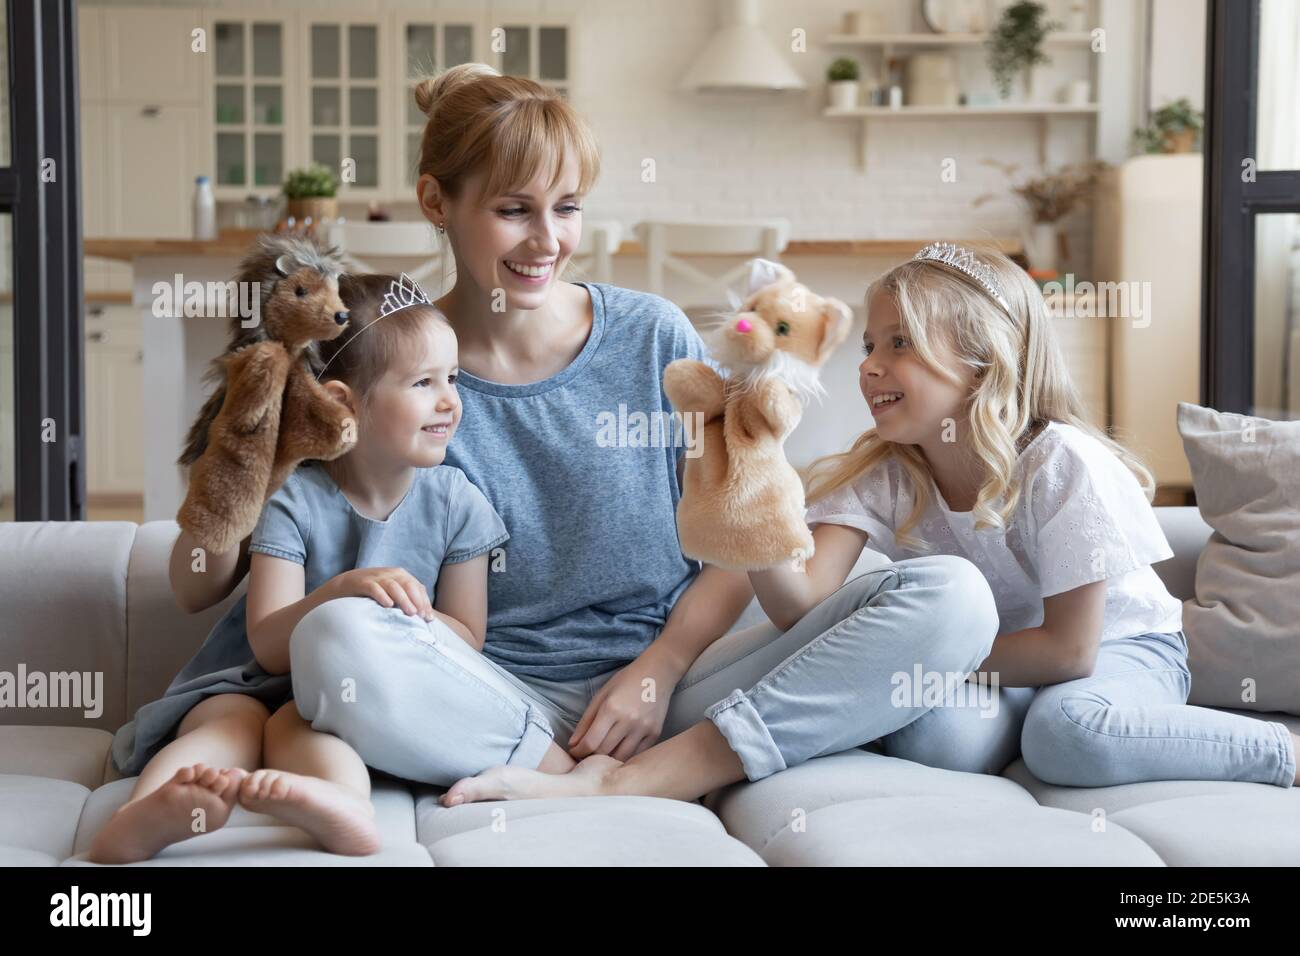 Jeune mère souriante avec deux petites filles jouant au théâtre de poupée Banque D'Images